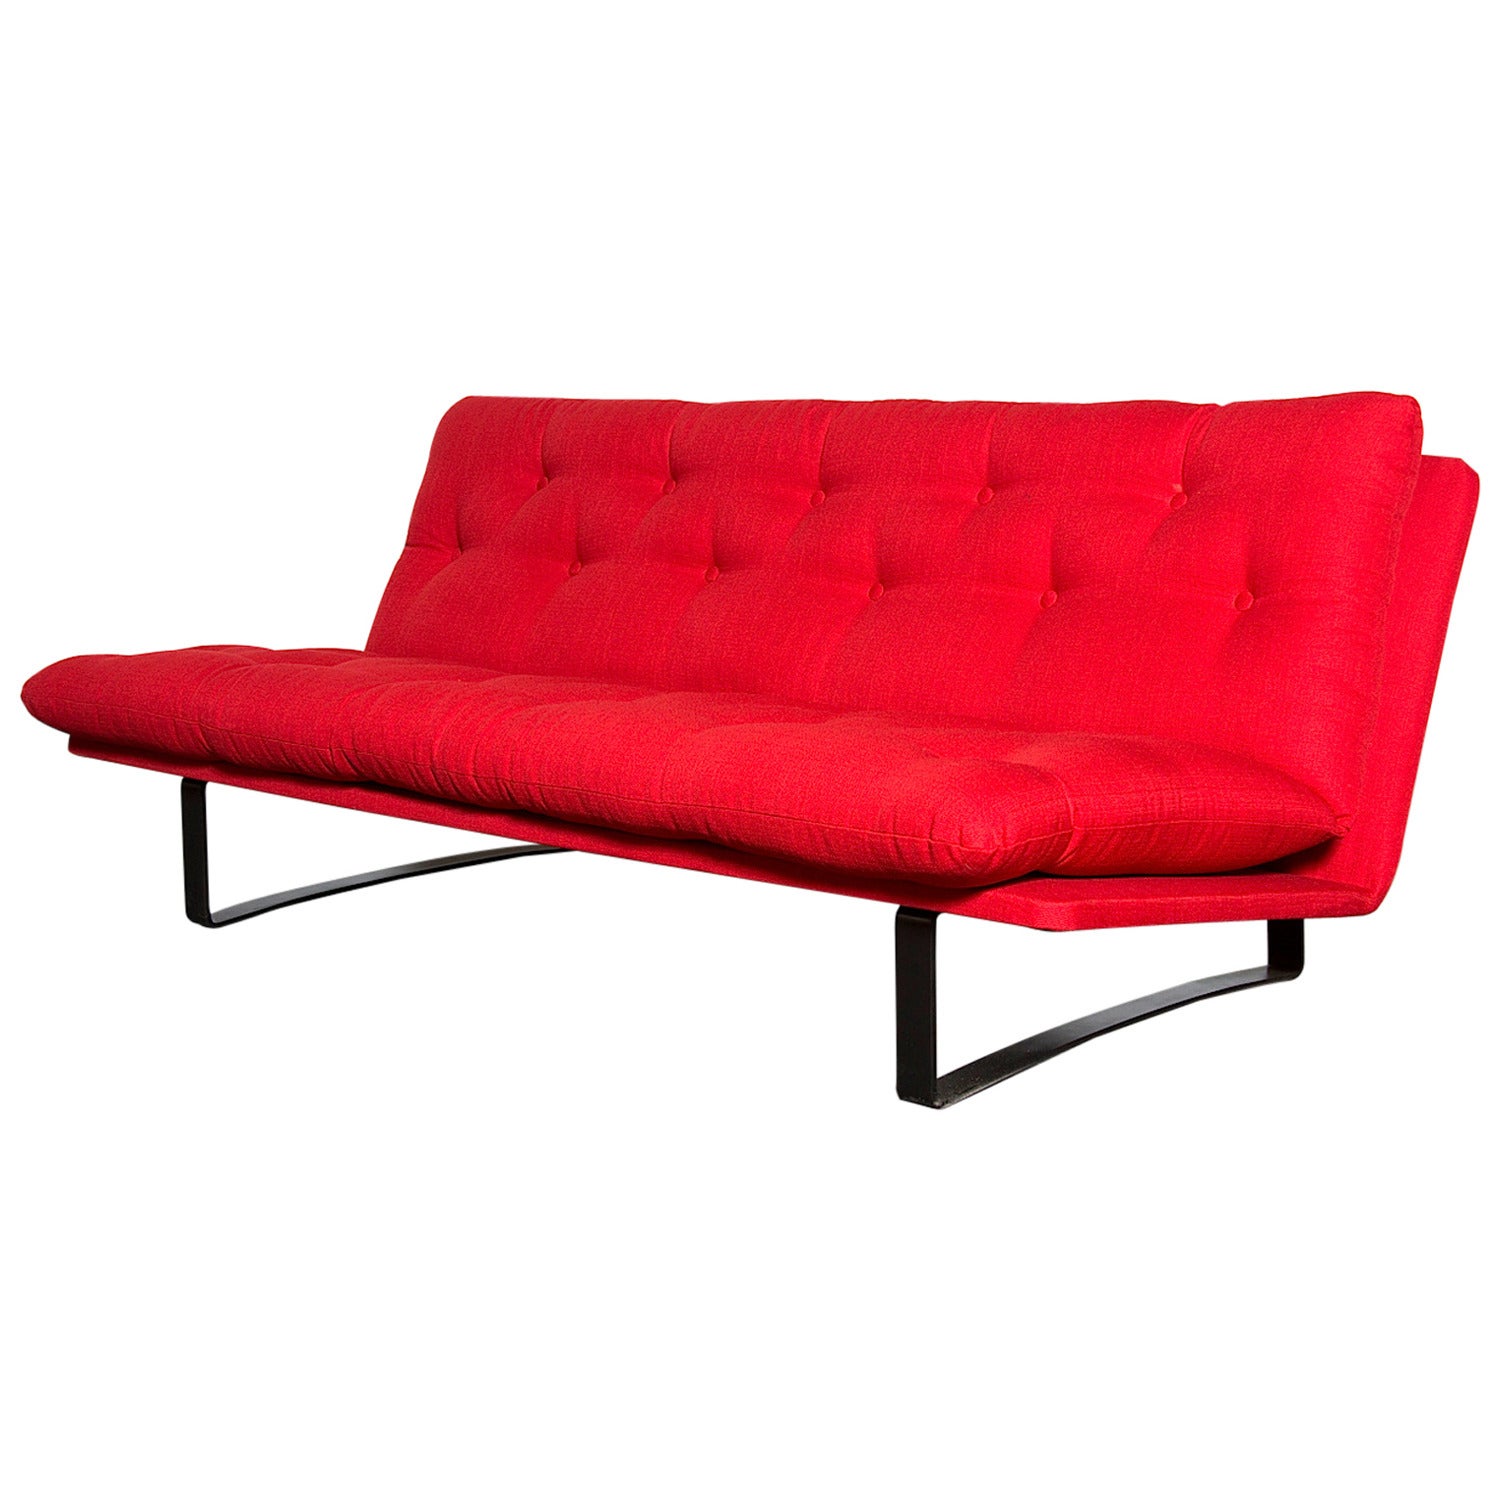 Kho Liang le Tufted Red Upholstered 'Model 662' Sofa for Artifort w/ Black Frame